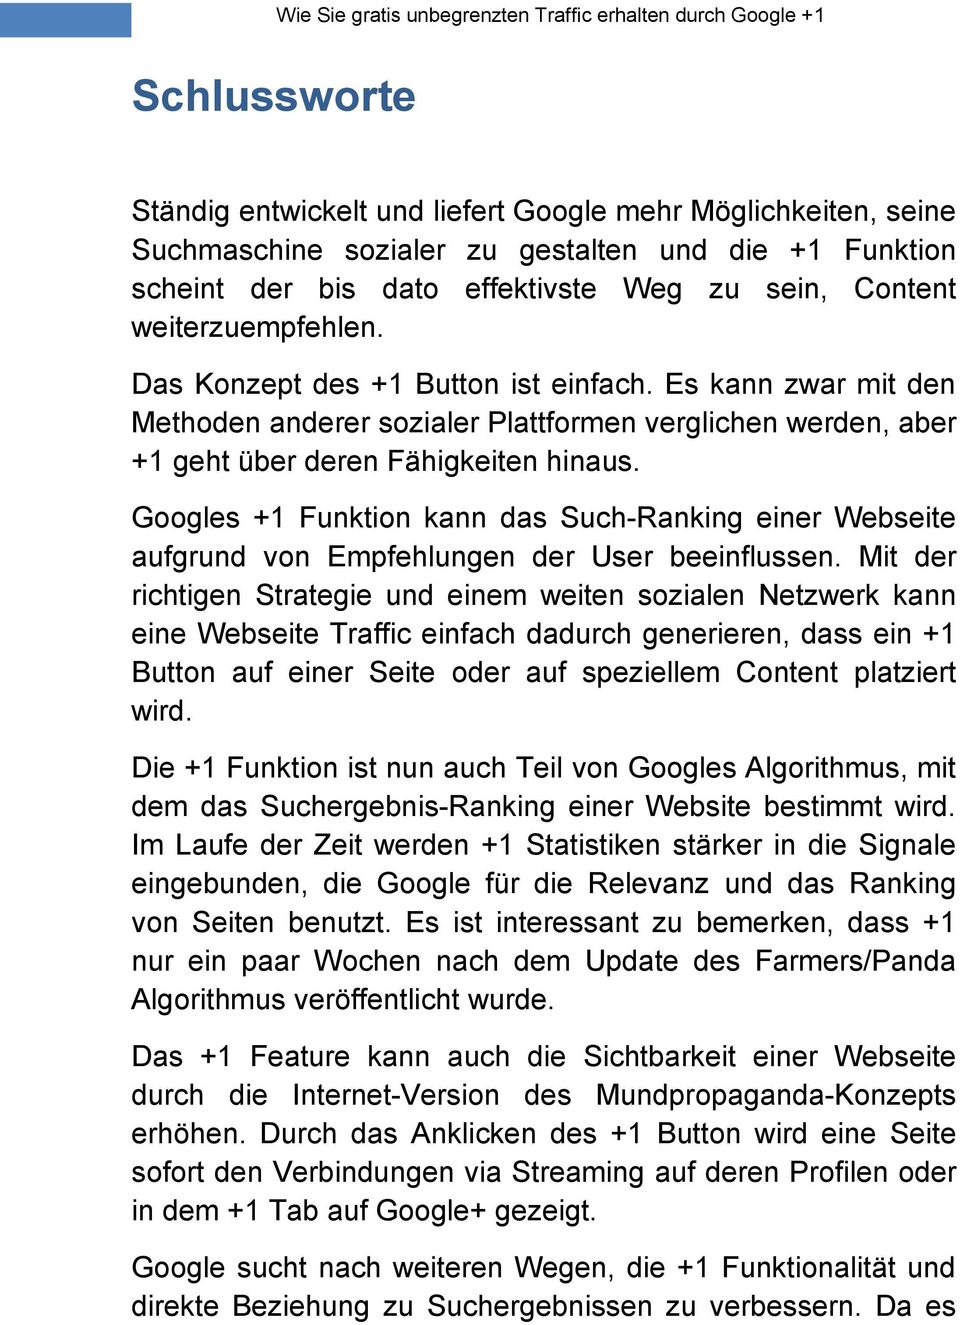 Googles +1 Funktion kann das Such-Ranking einer Webseite aufgrund von Empfehlungen der User beeinflussen.